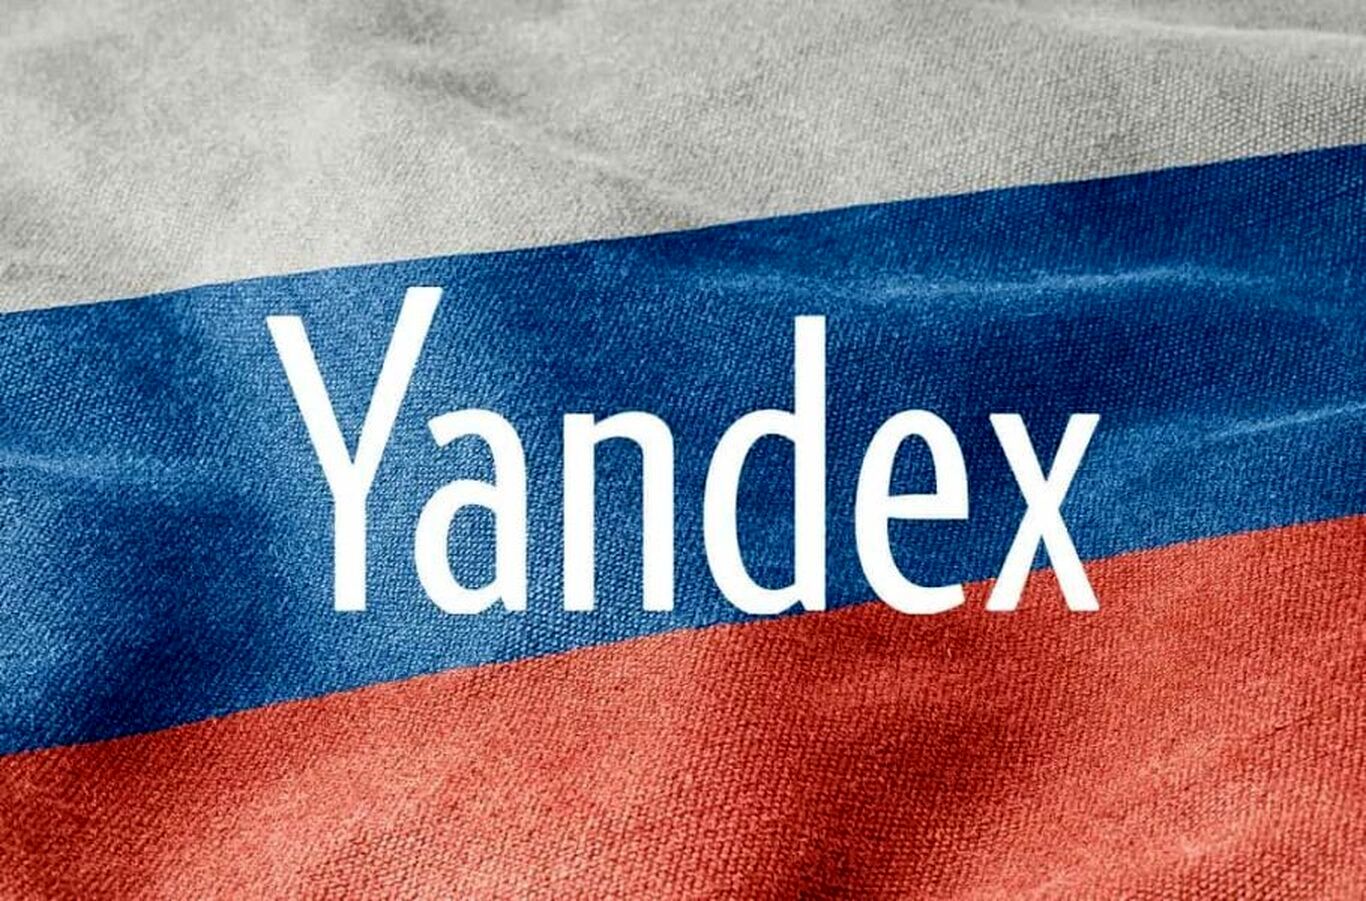 کارمند سابق یاندکس، این شرکت روسی را با خاک یکسان کرد!